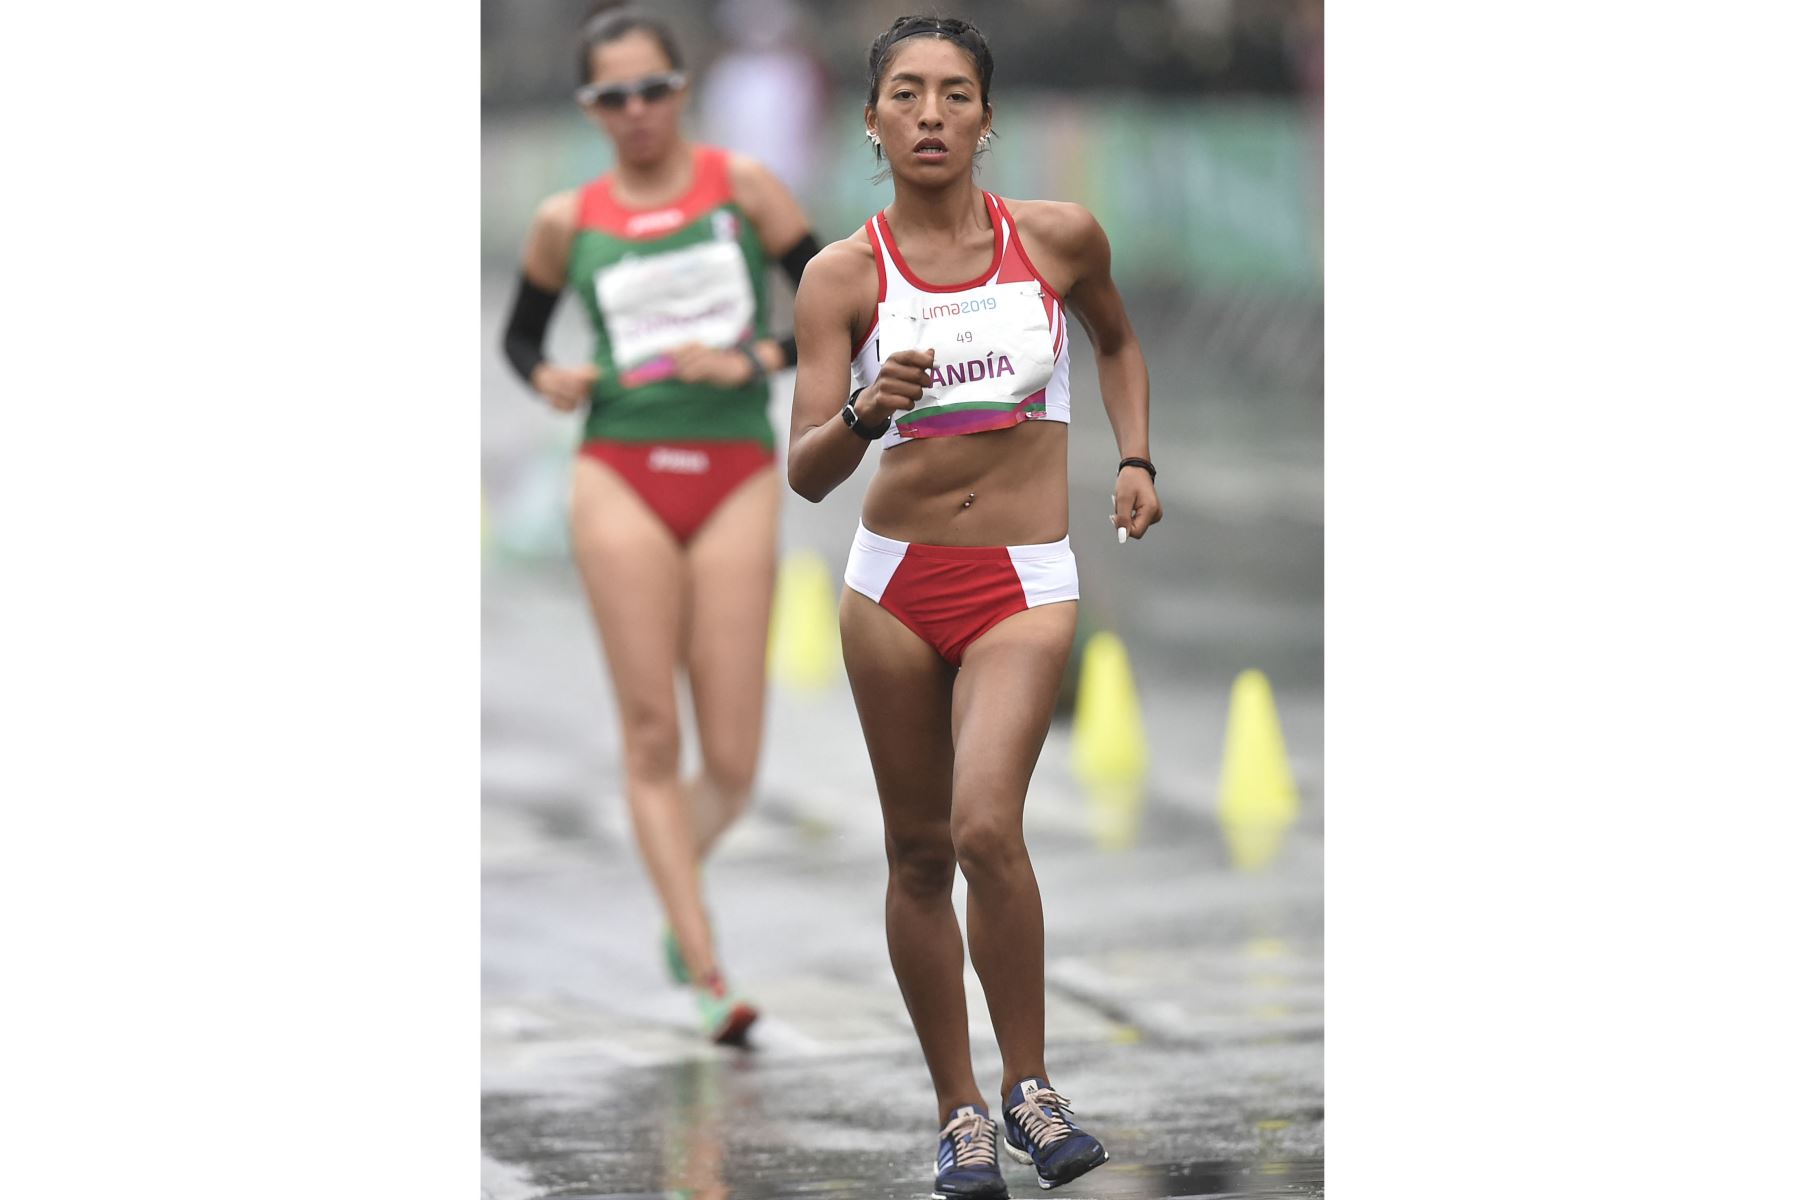 La peruana Mary Luz Andia compite en la carrera final de 20 km de caminata femenina durante los Juegos Panamericanos Lima 2019.
Foto: AFP